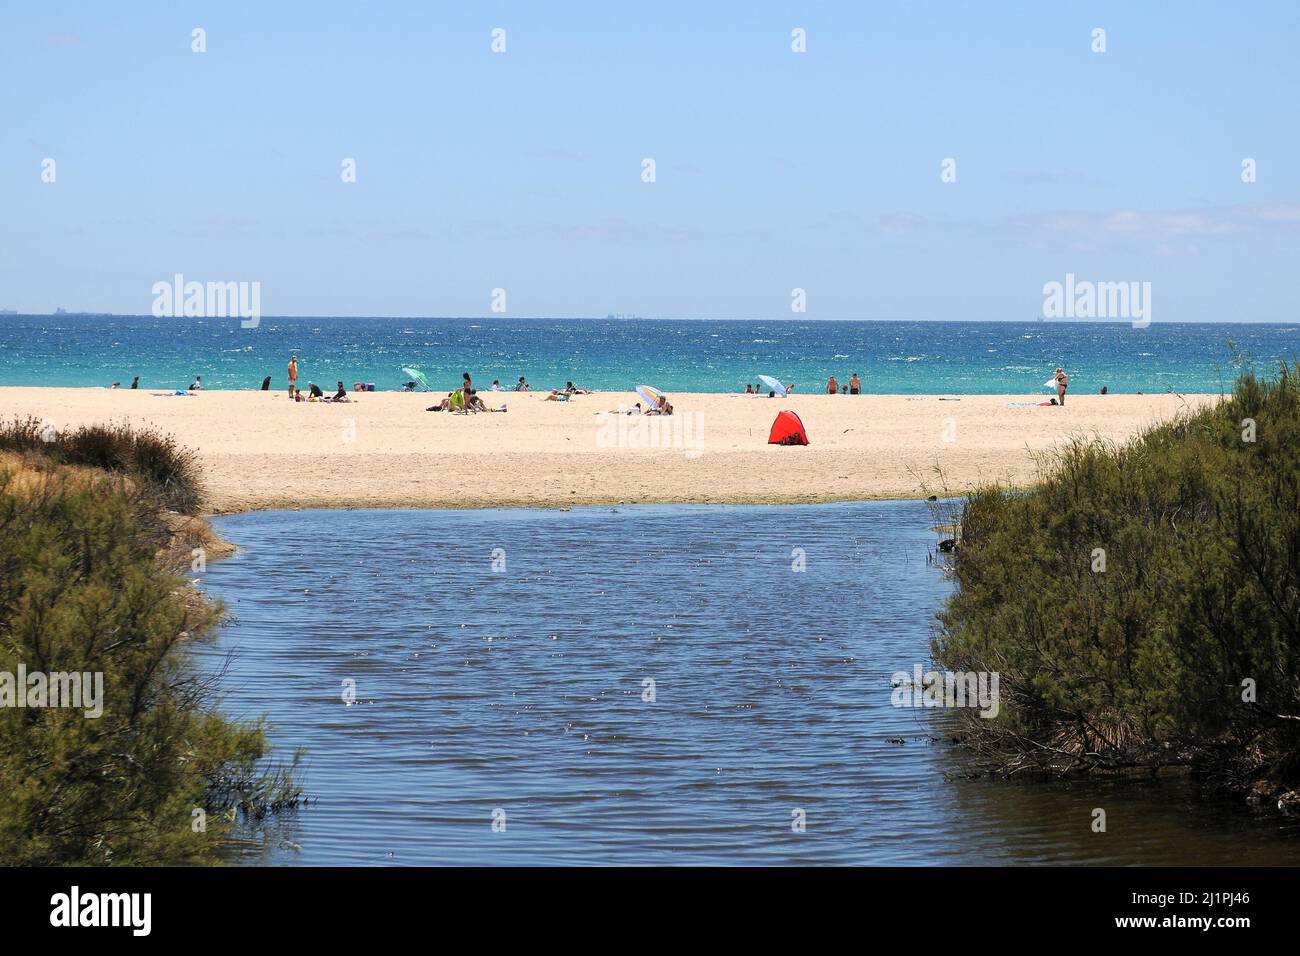 La plage de Tarifa, Cadix (crédit Image : © Julen Pascual Gonzalez) Banque D'Images